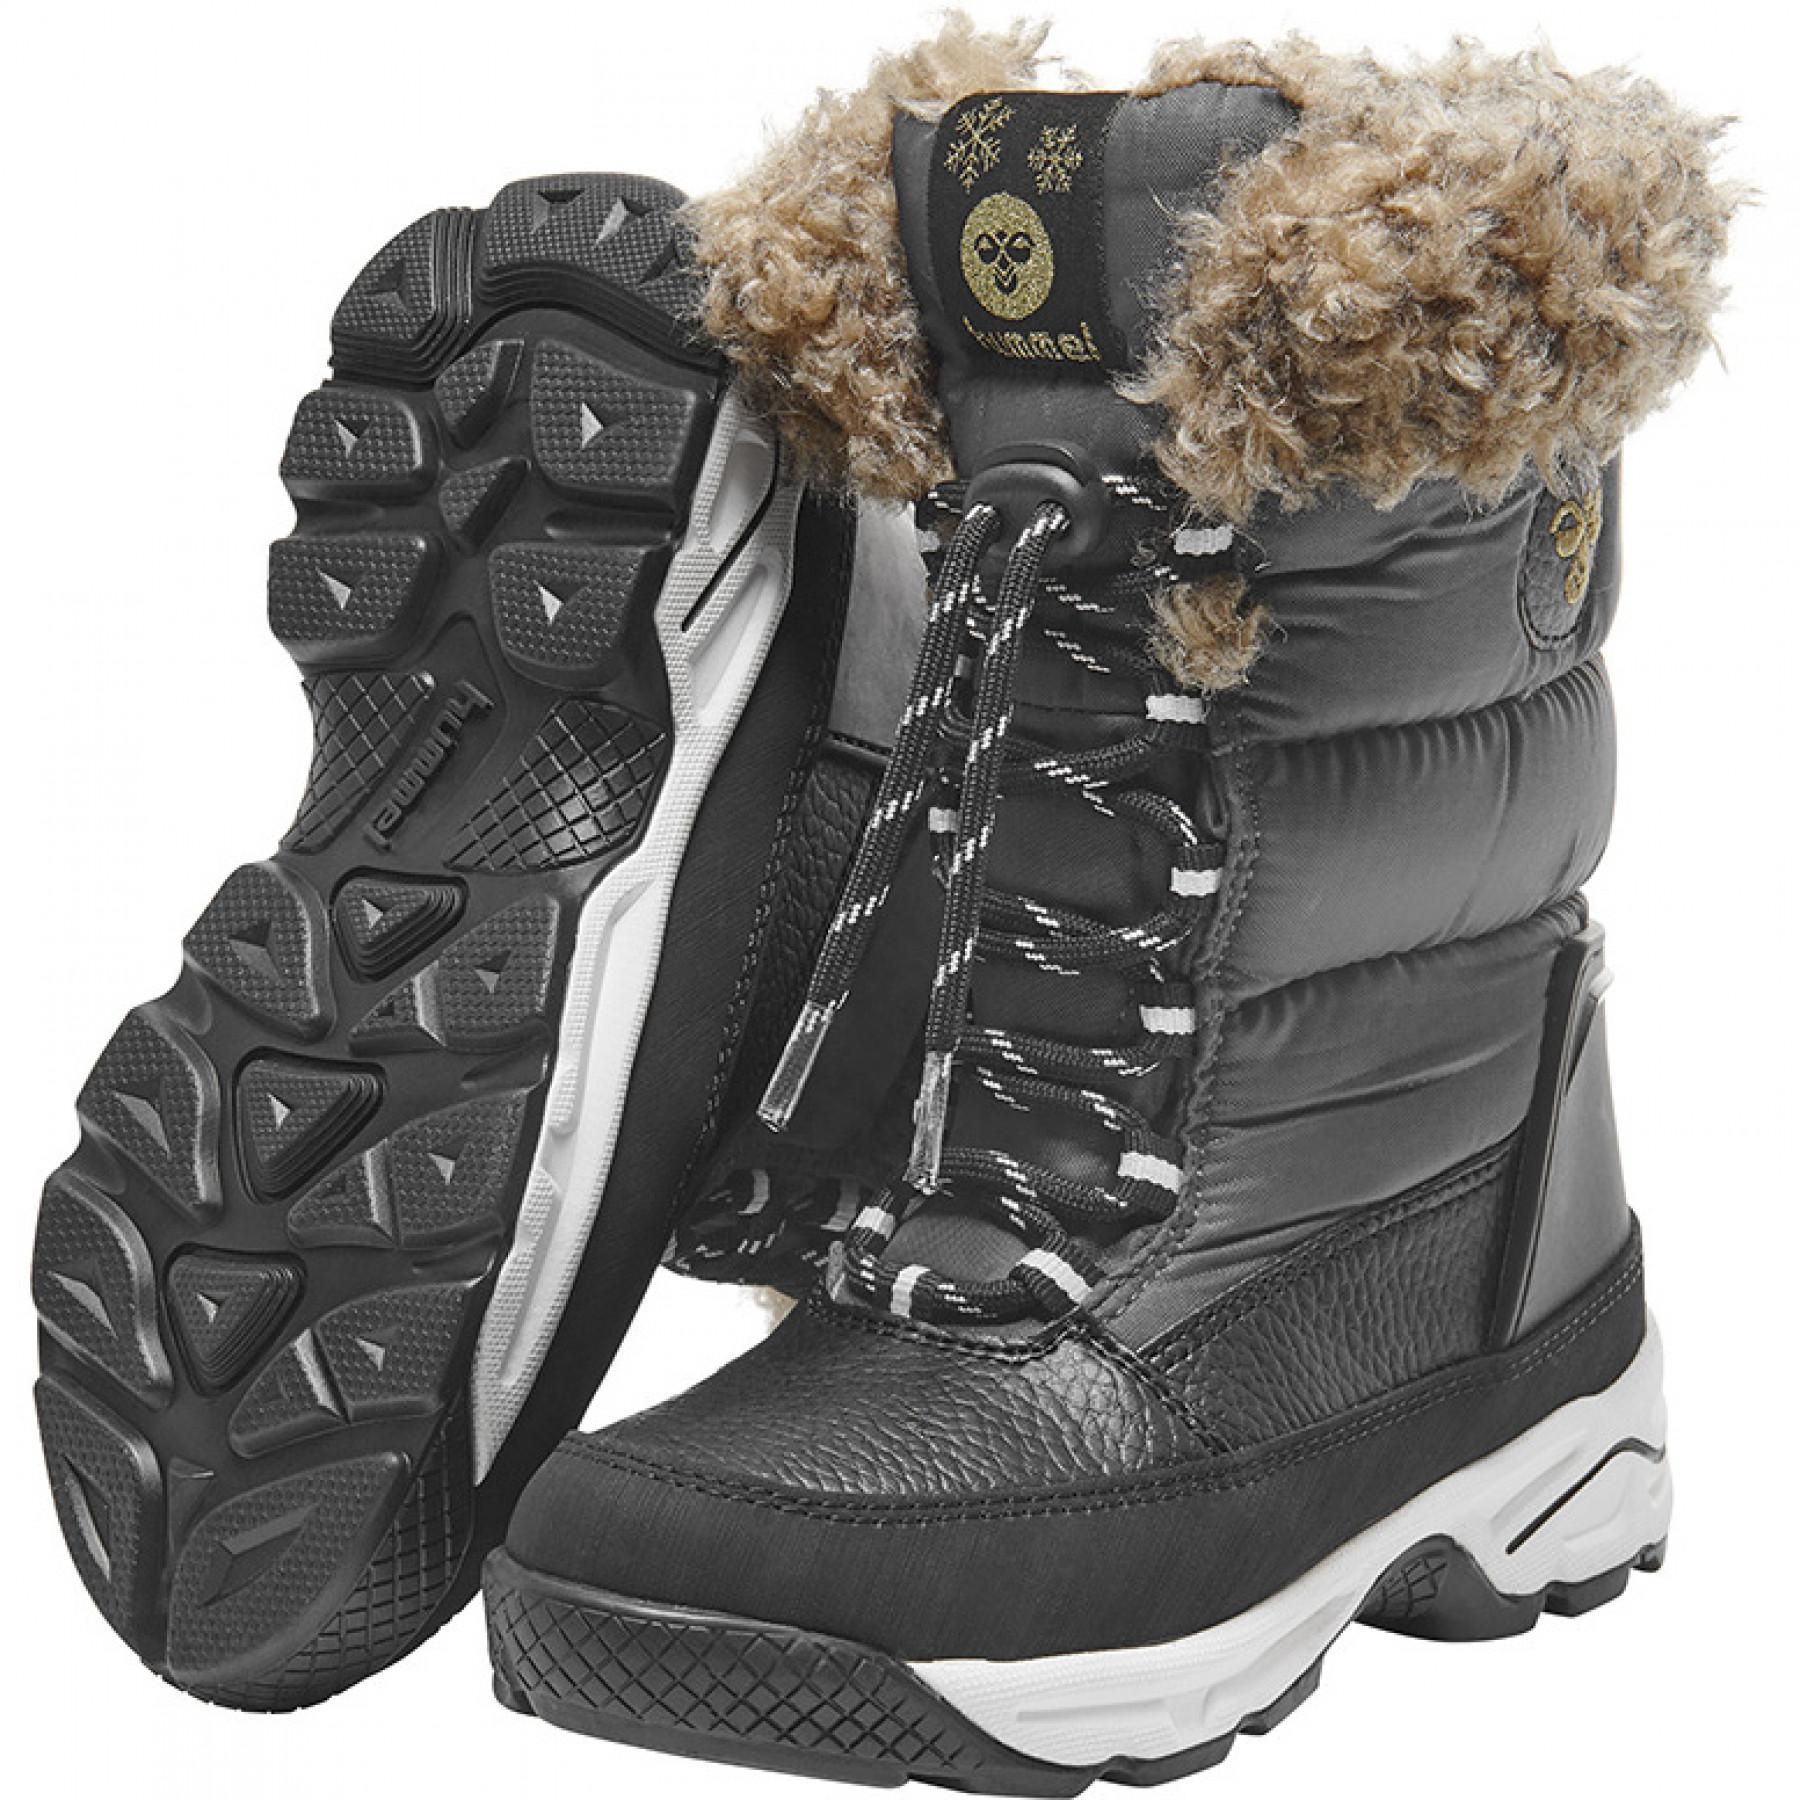 Children's sneakers Hummel snow boot